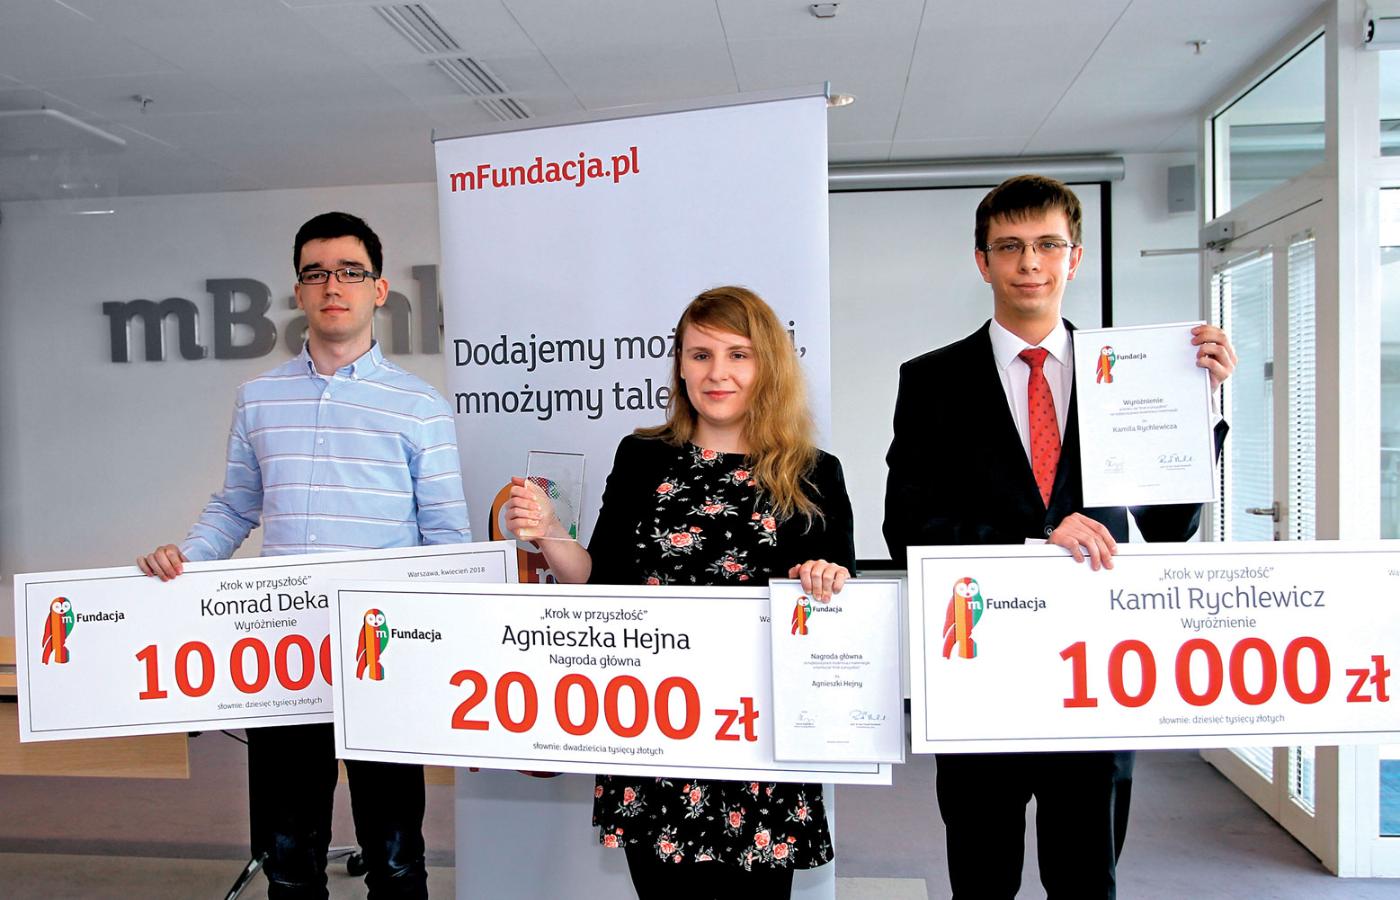 Laureaci konkursu od lewej: Konrad Deka, Agnieszka Hejna i Kamil Rychlewicz.